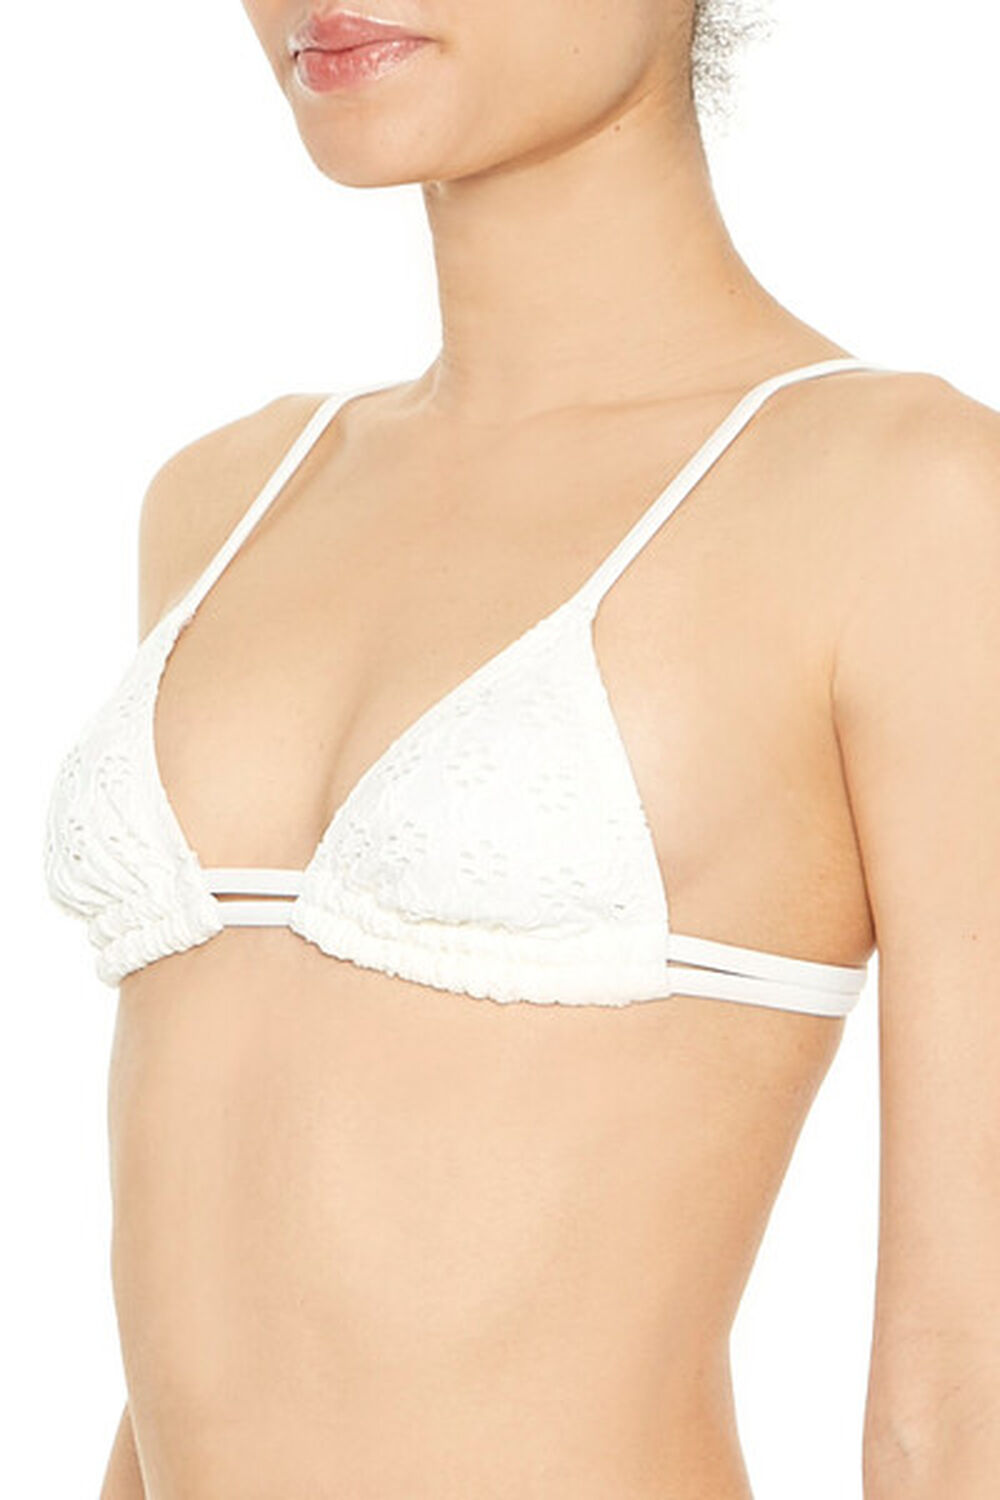 WHITE Crochet Floral Eyelet Bikini Top, image 2